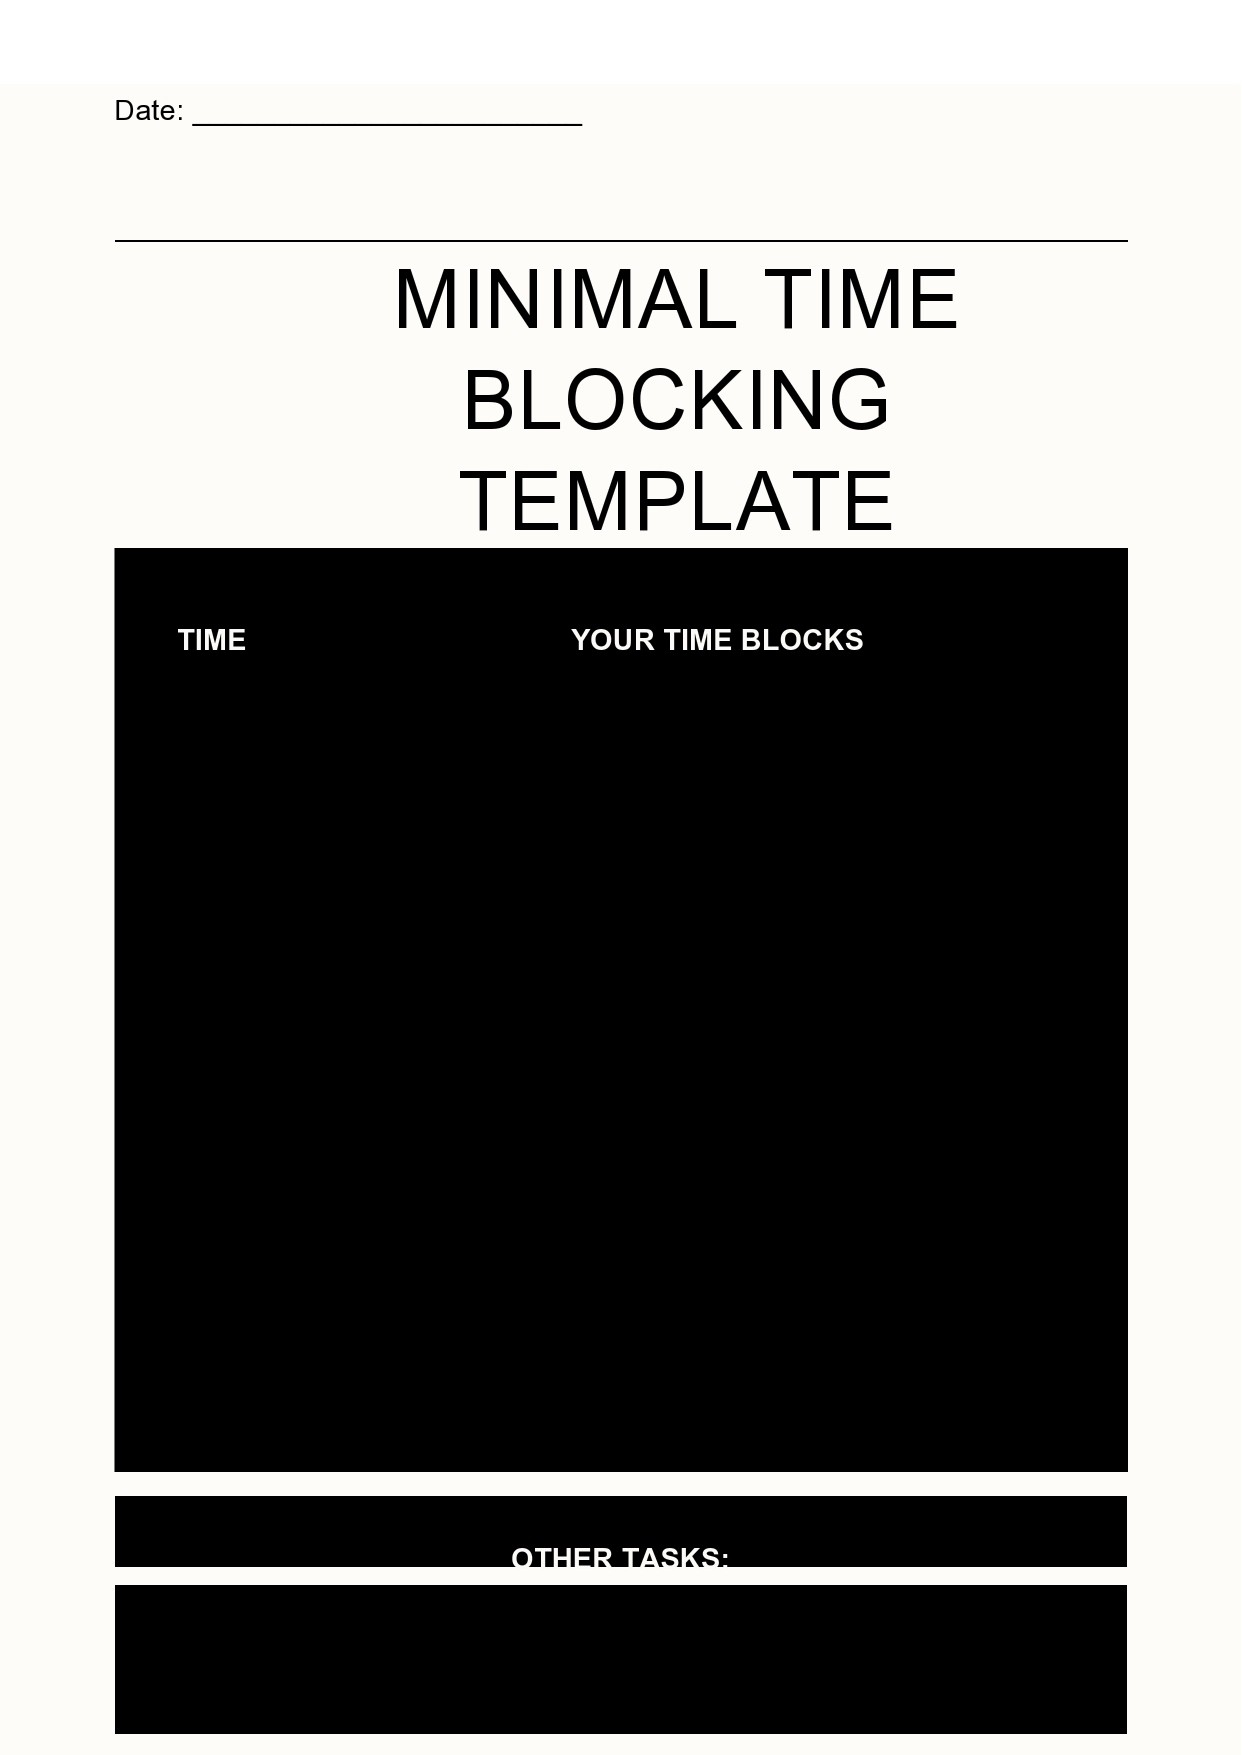 Free time blocking template 11